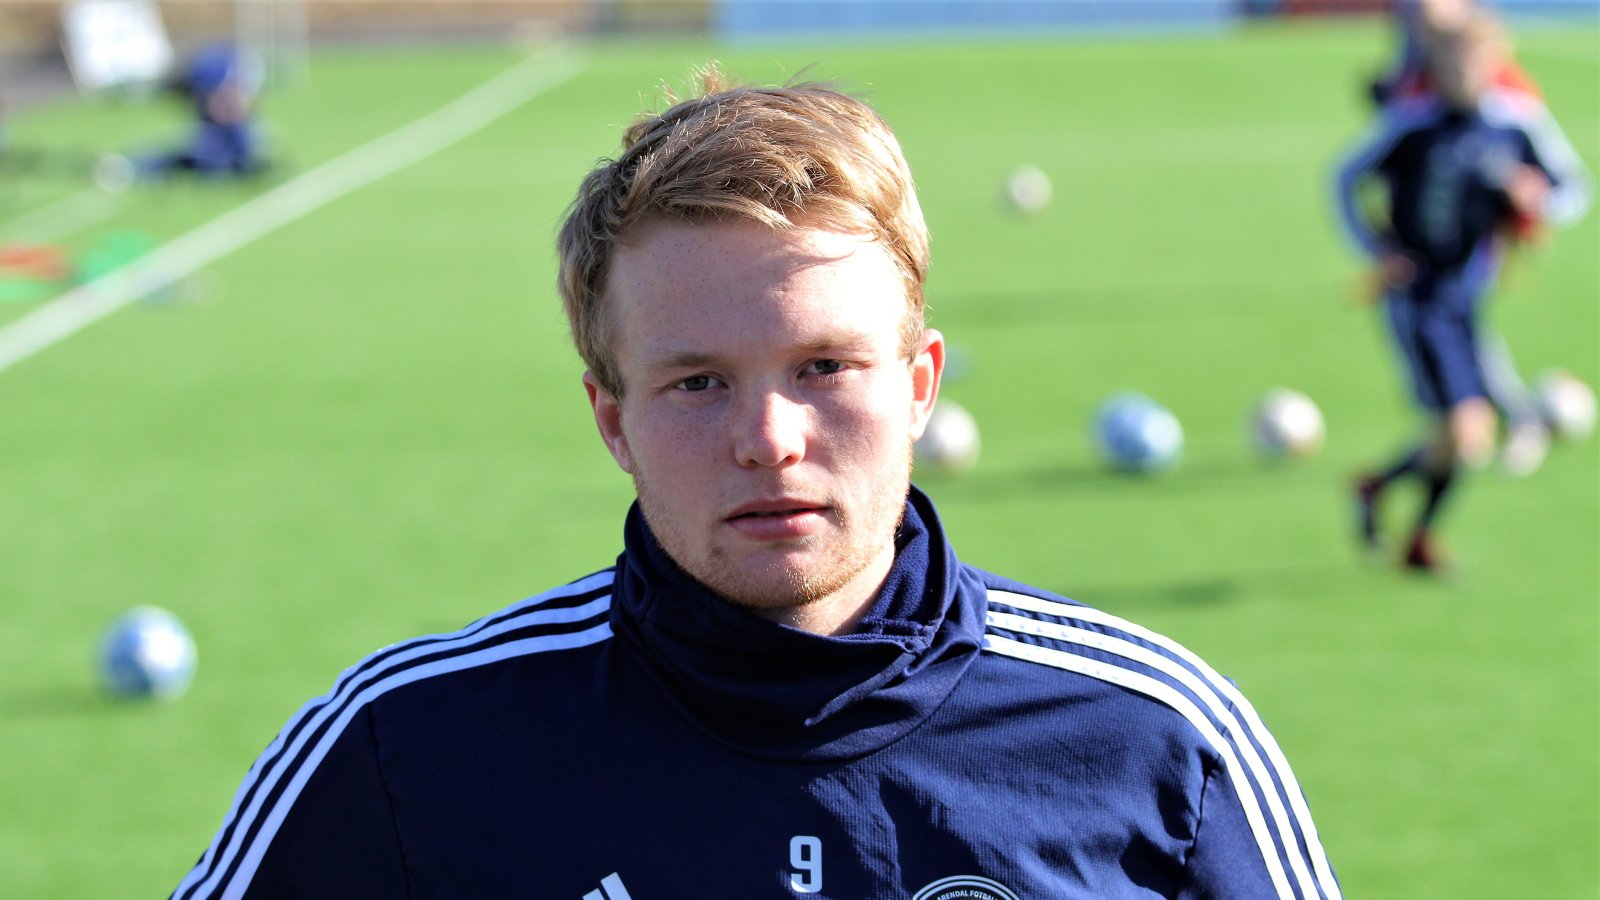 Fabian Stensrud Ness er kaptein for Arendal Fotball i 2019-sesongen. Han står med 41 offisielle kamper og 15 mål for Arendal foran den kommende sesongen. 